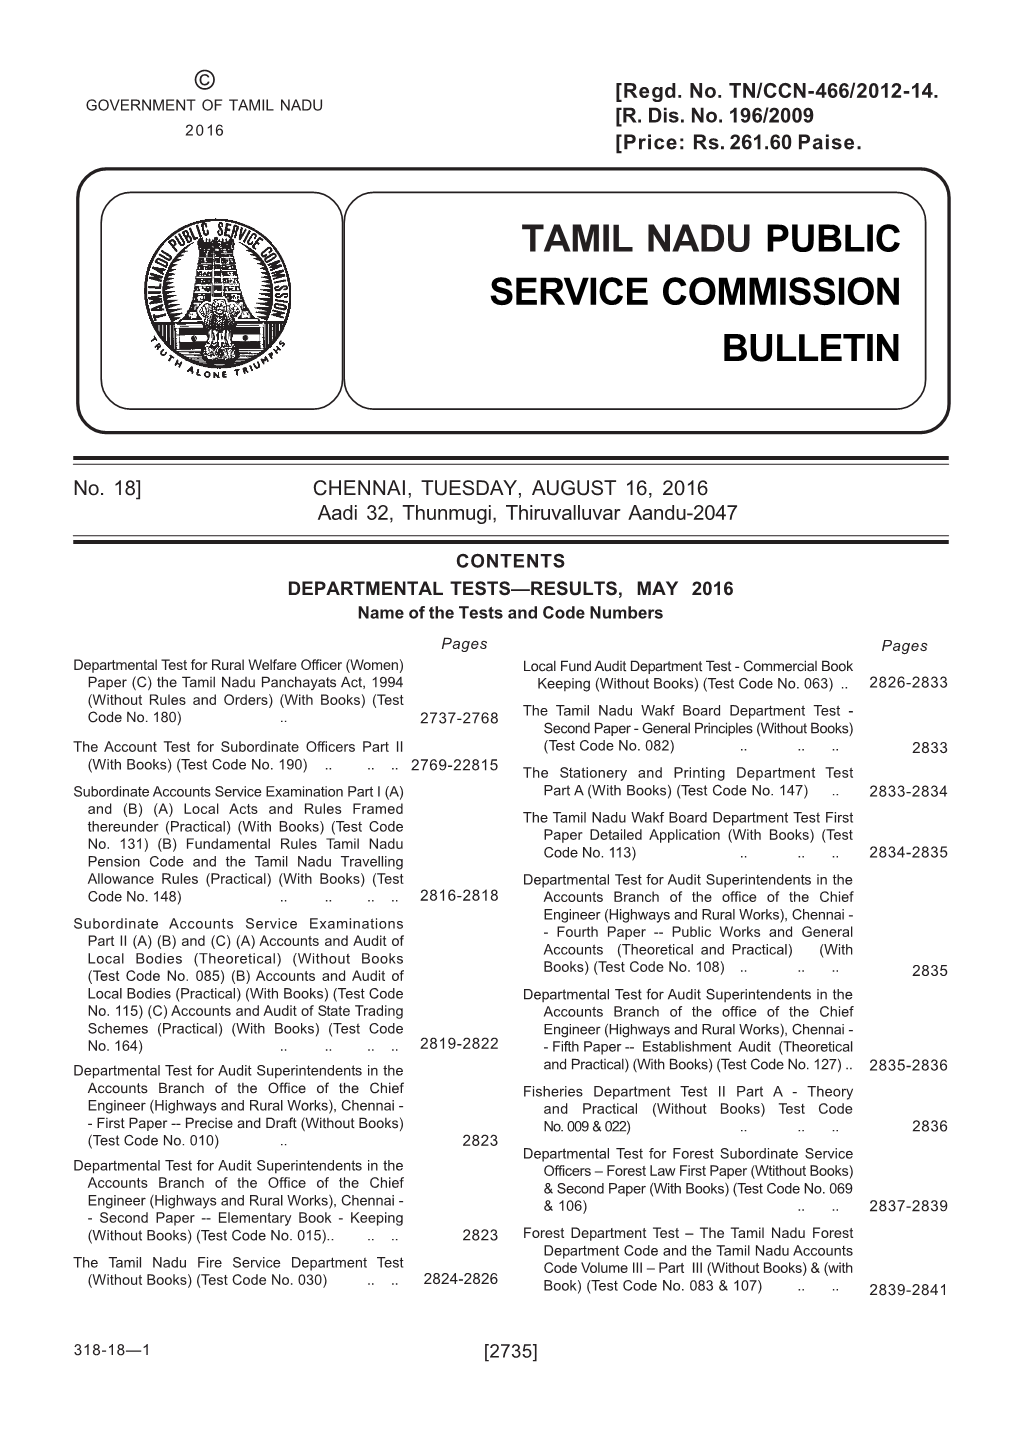 Tamil Nadu Public Service Commission Bulletin